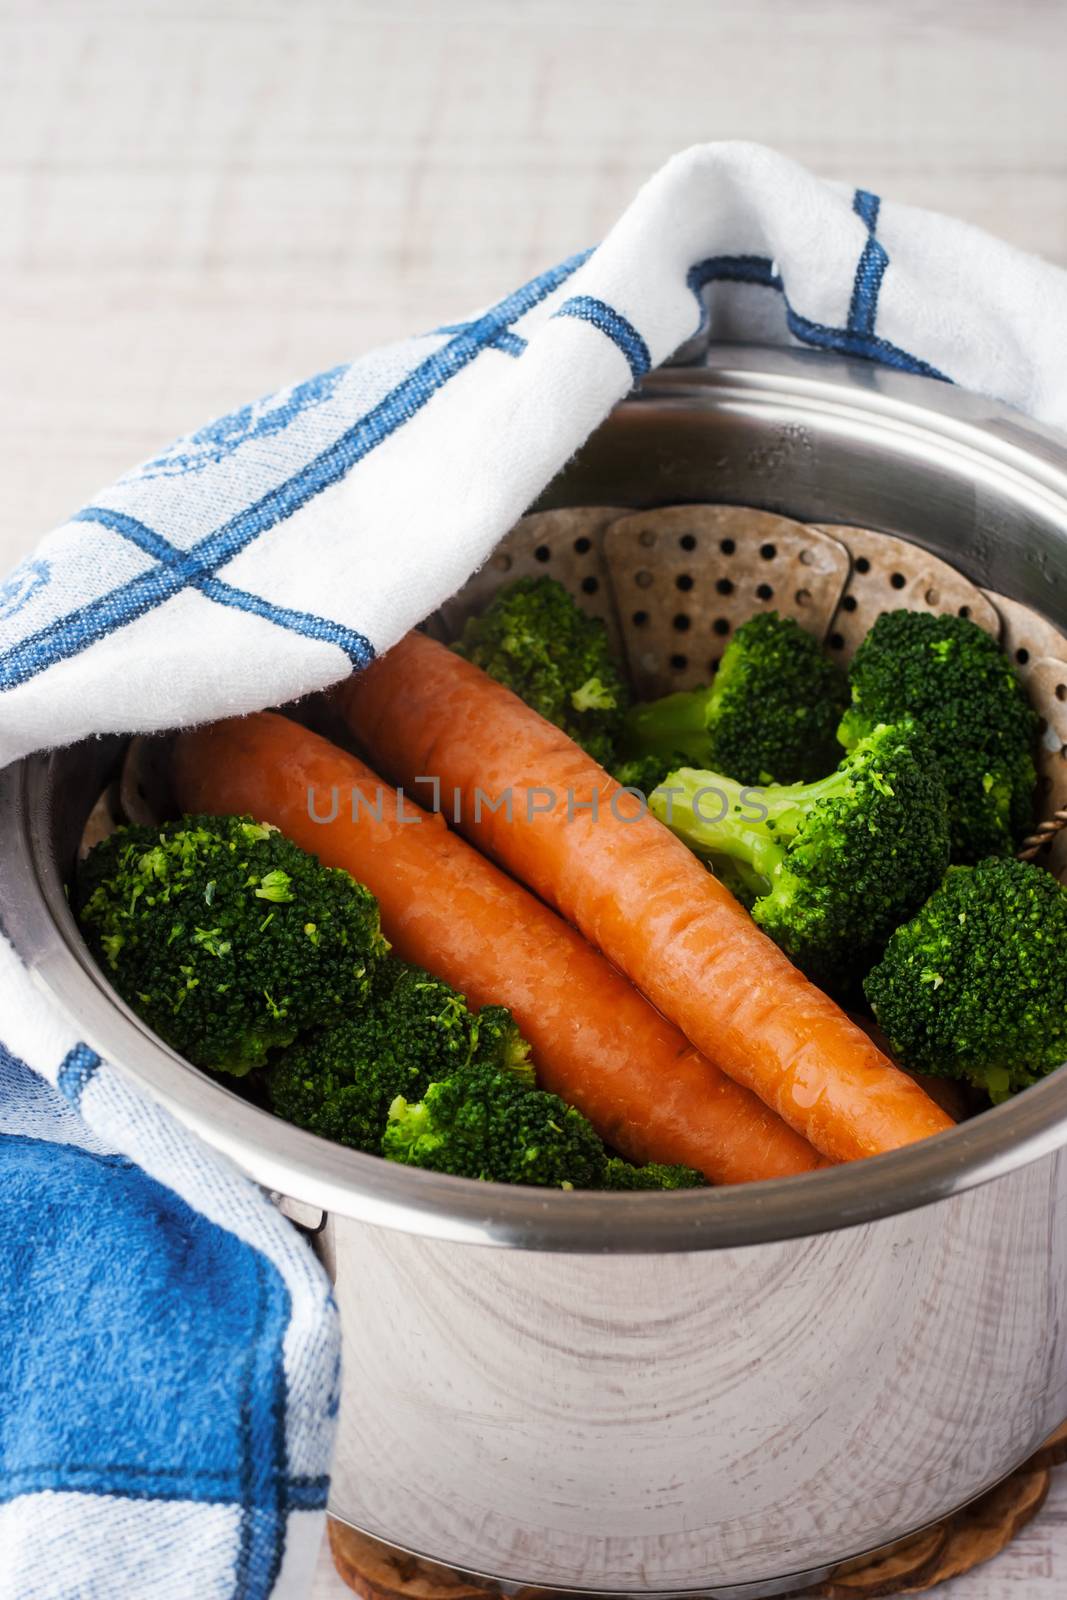 Carrots and broccoli by Deniskarpenkov